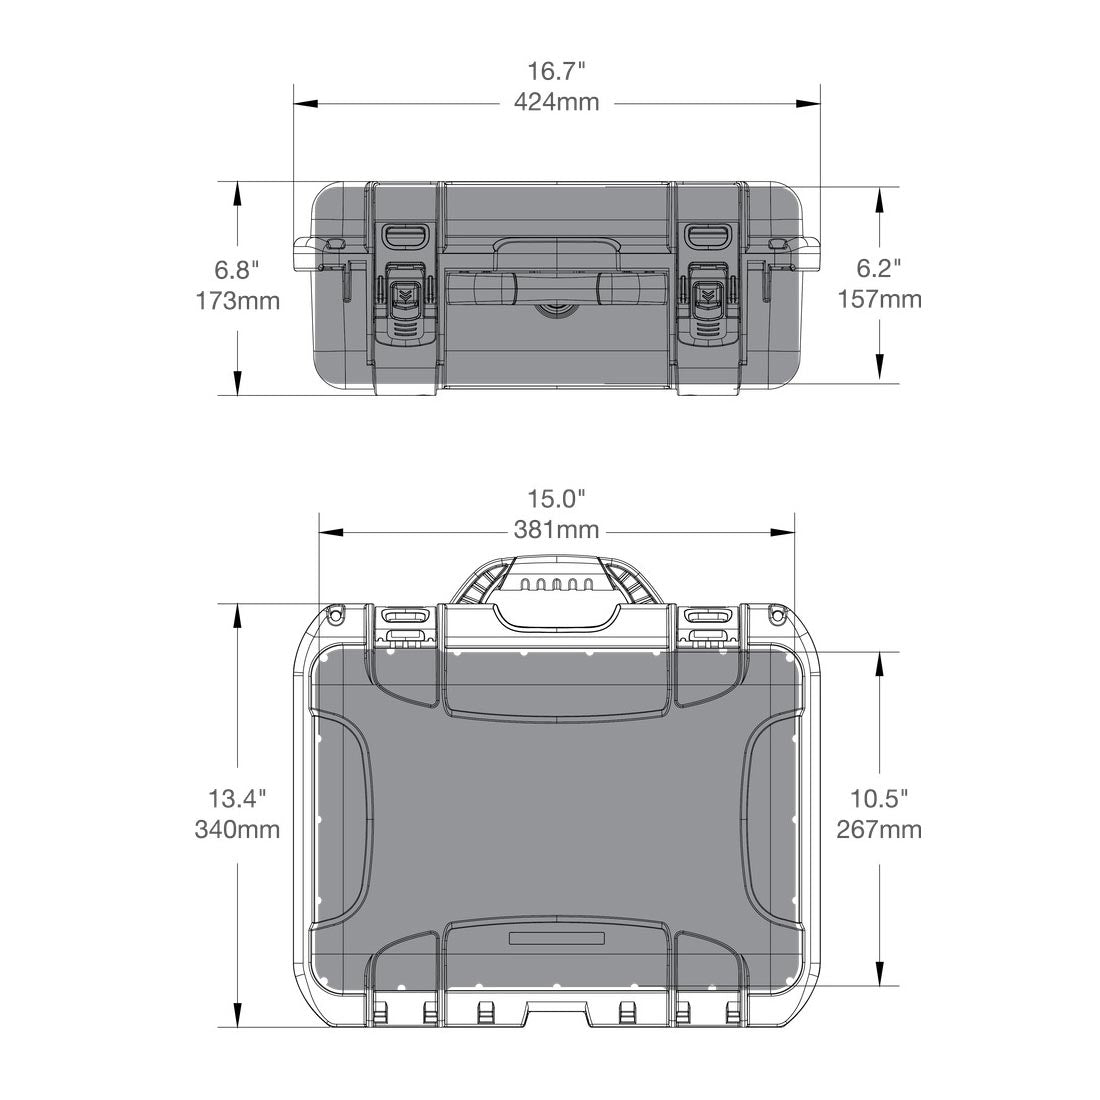 NANUK 920 Waterproof Hard Case with Custom Foam Insert for Sony A7R Size Camera